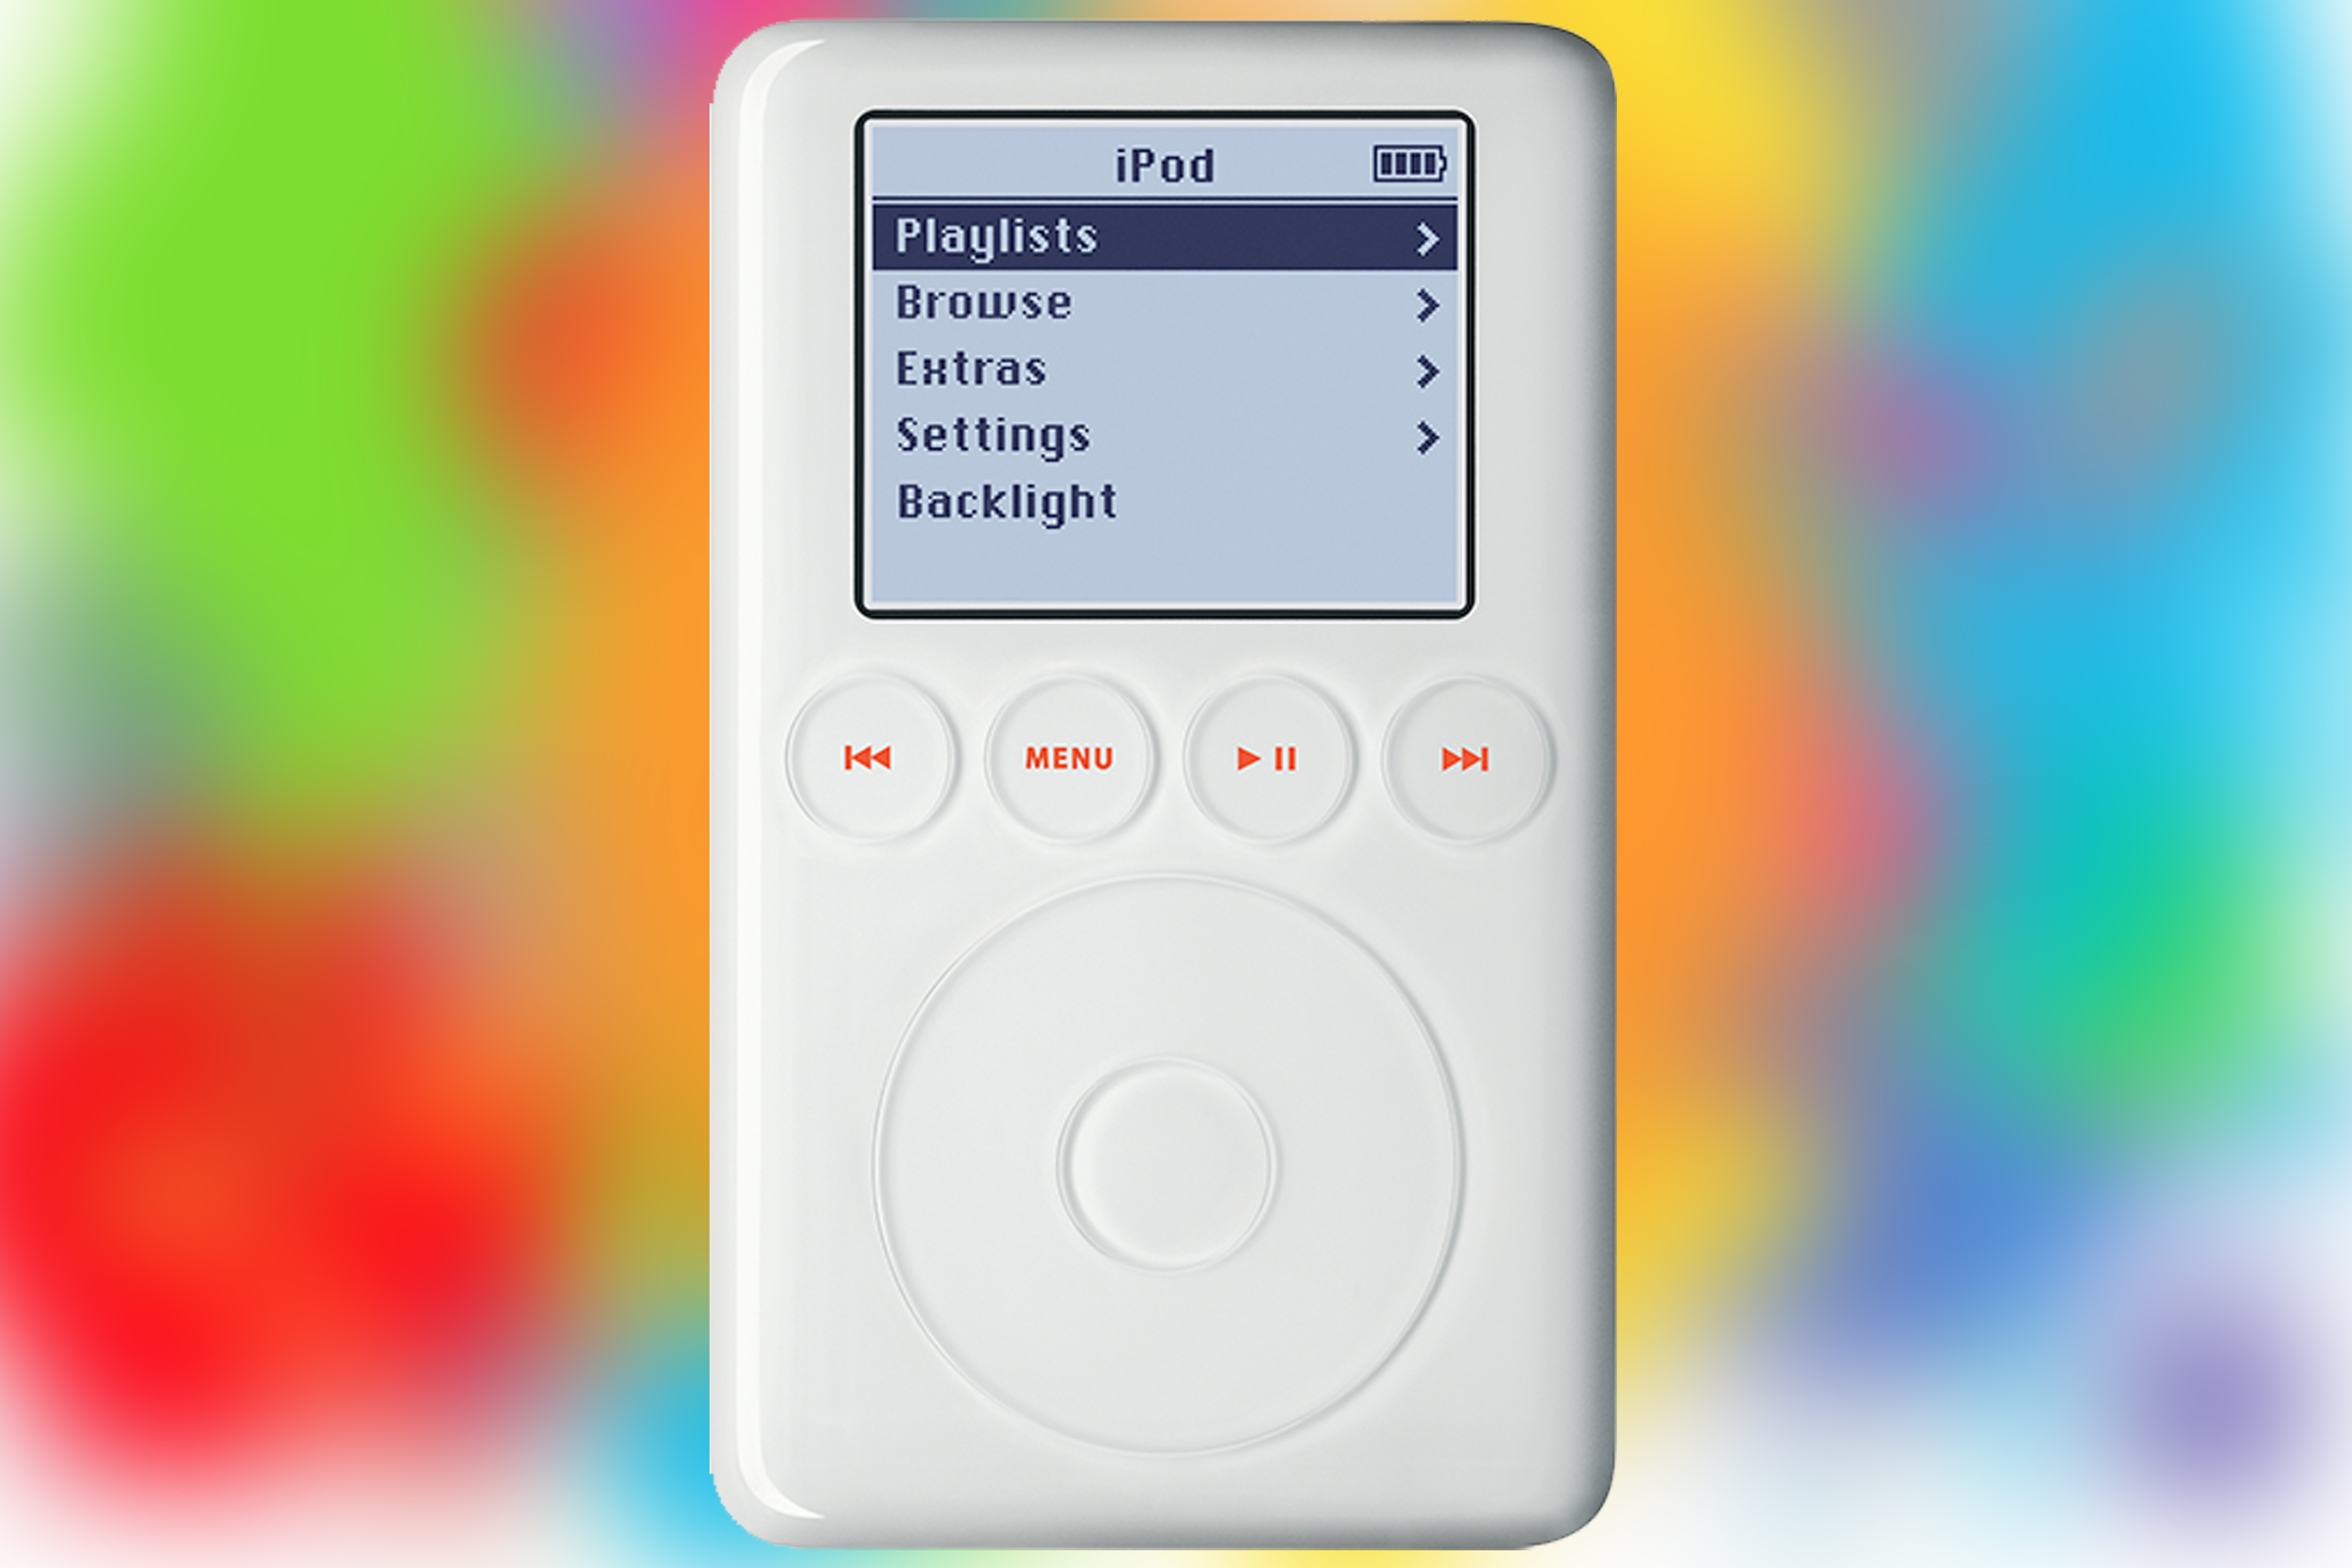 iPod de 3ª geração